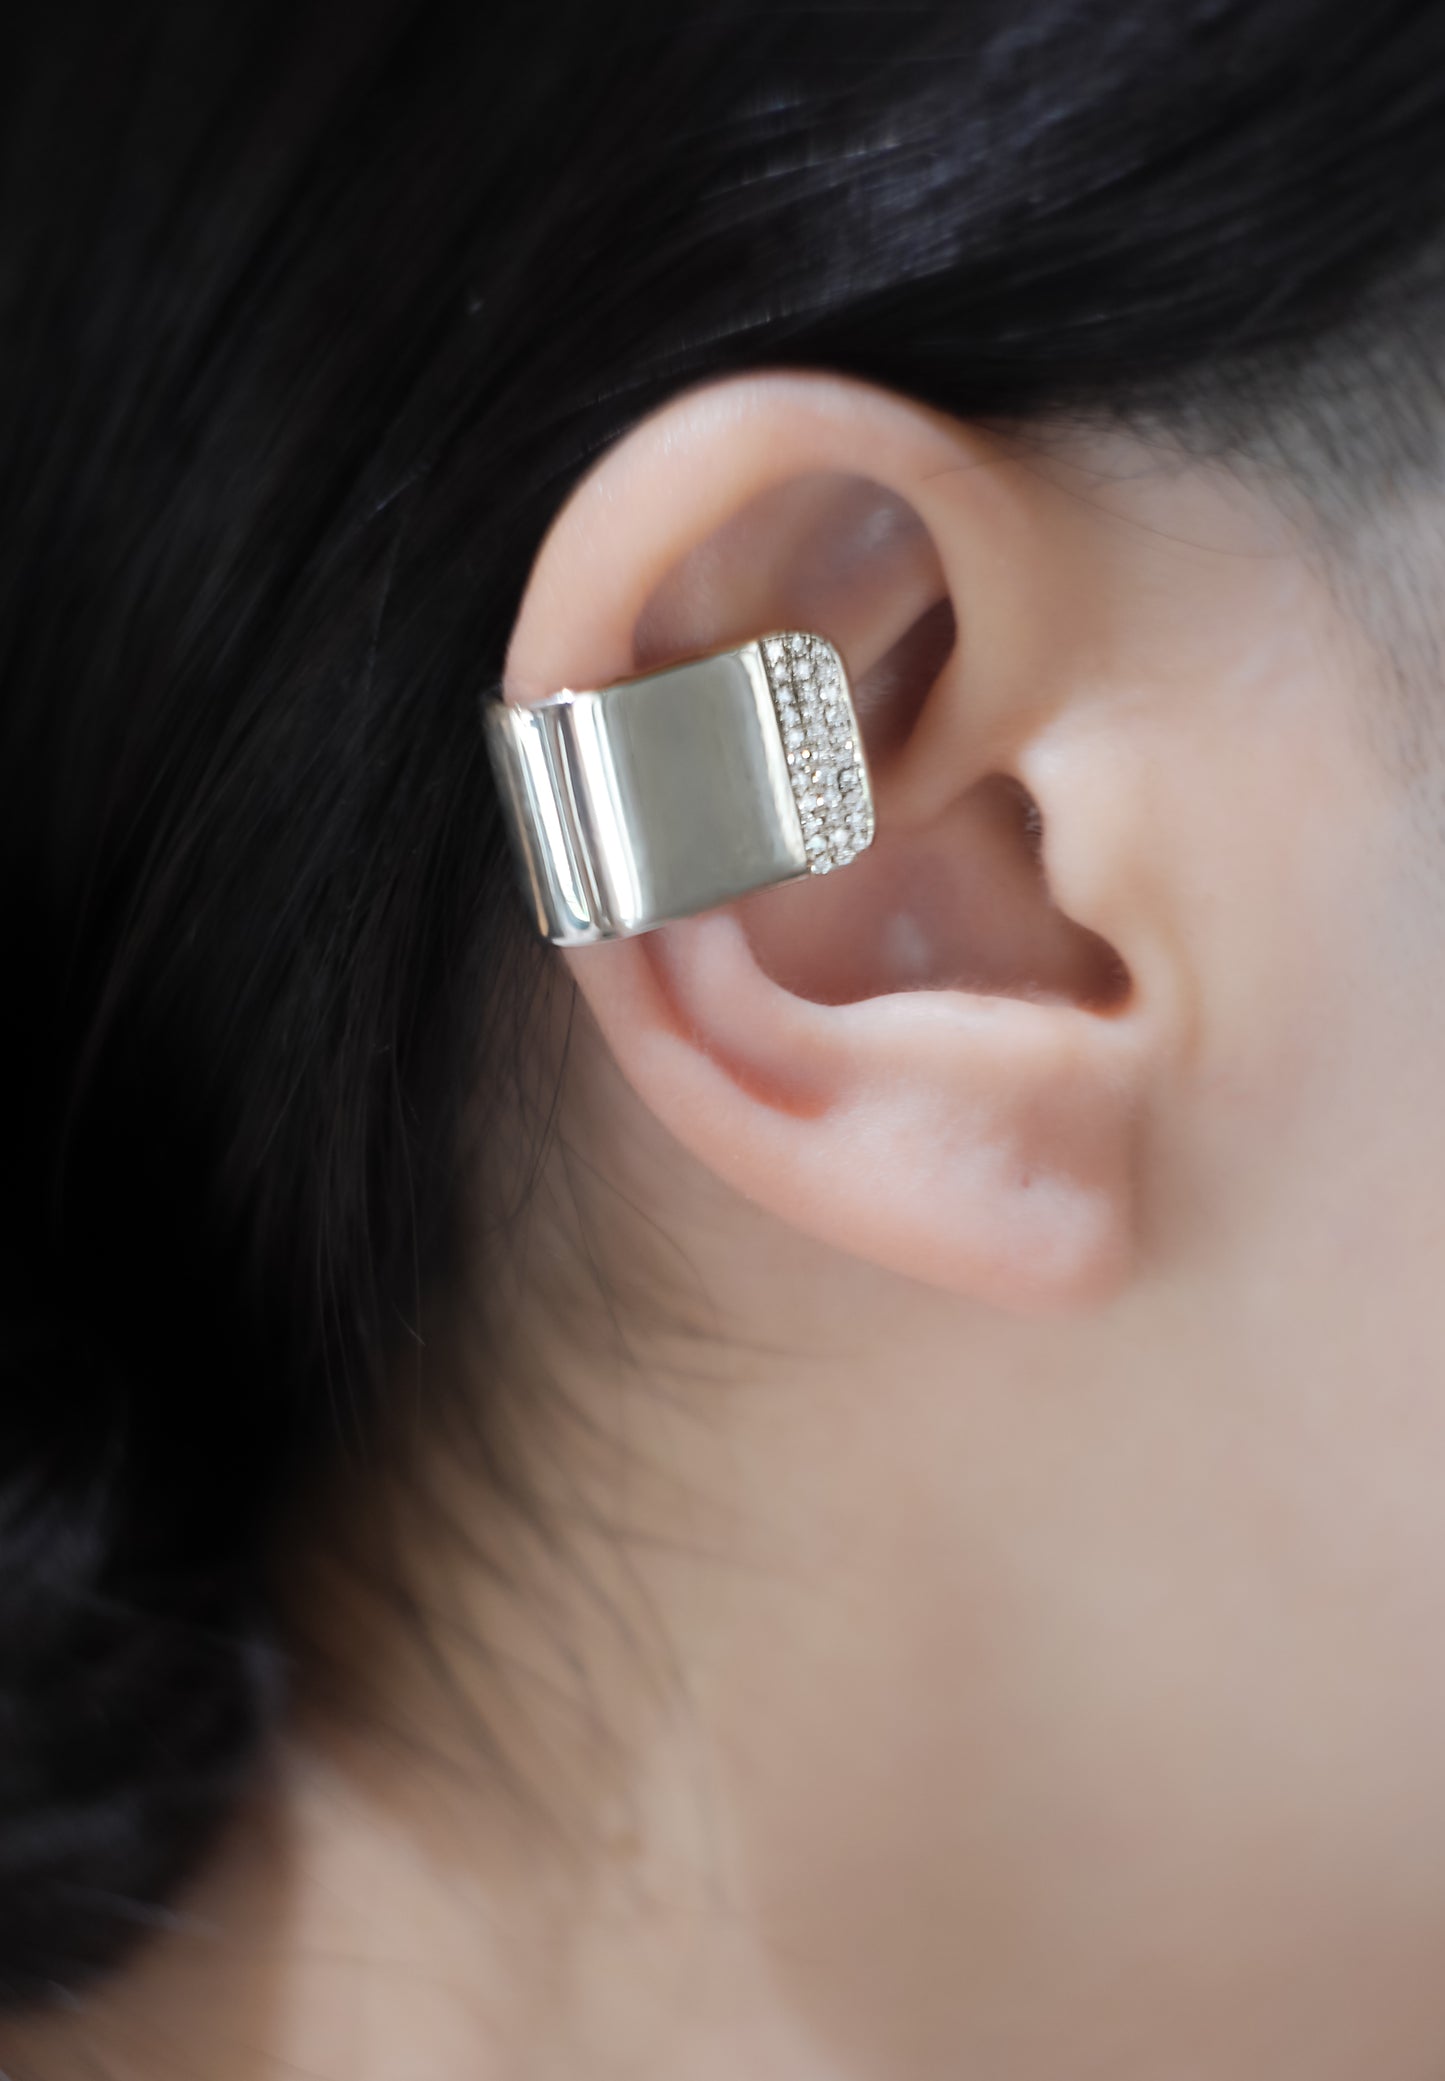 助听器钻石|助听器钻石|耳罩| SV |实验室种植钻石